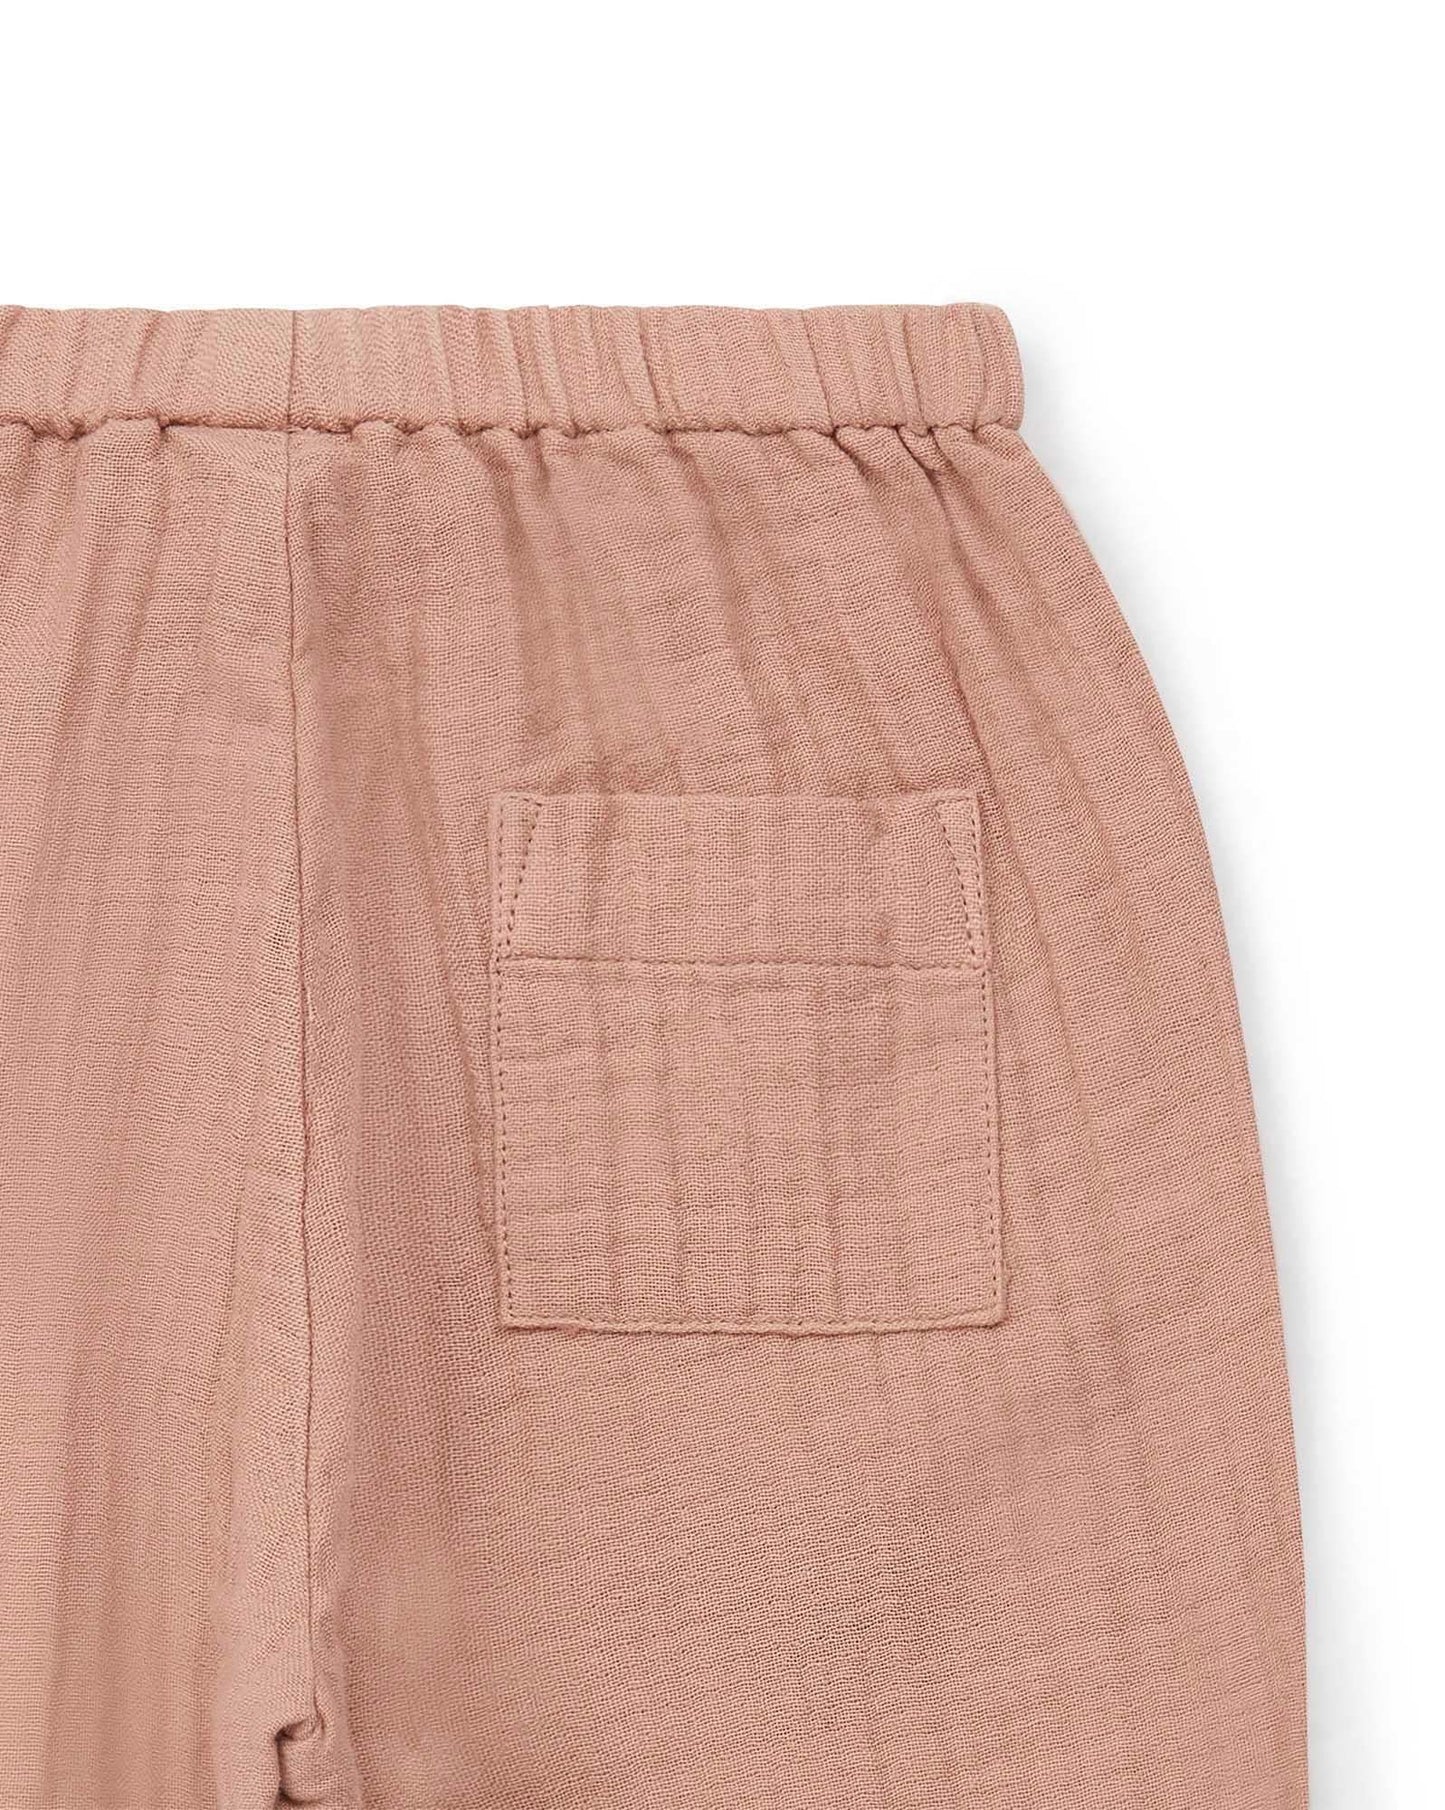 Pantalon - Futur rose Bébé gaze de coton biologique certifié GOTS